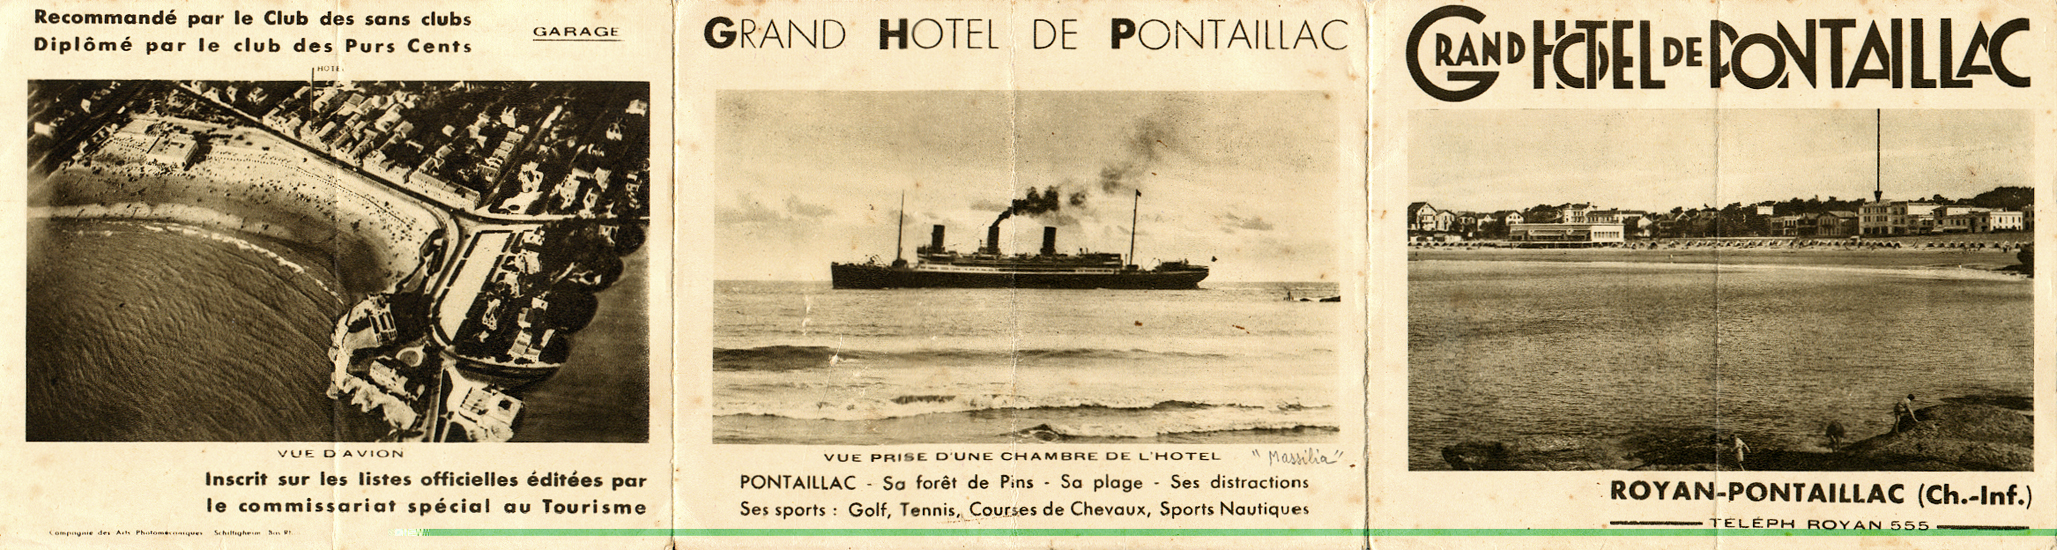 Dépliant publicitaire pour le grand Hôtel de Pontaillac